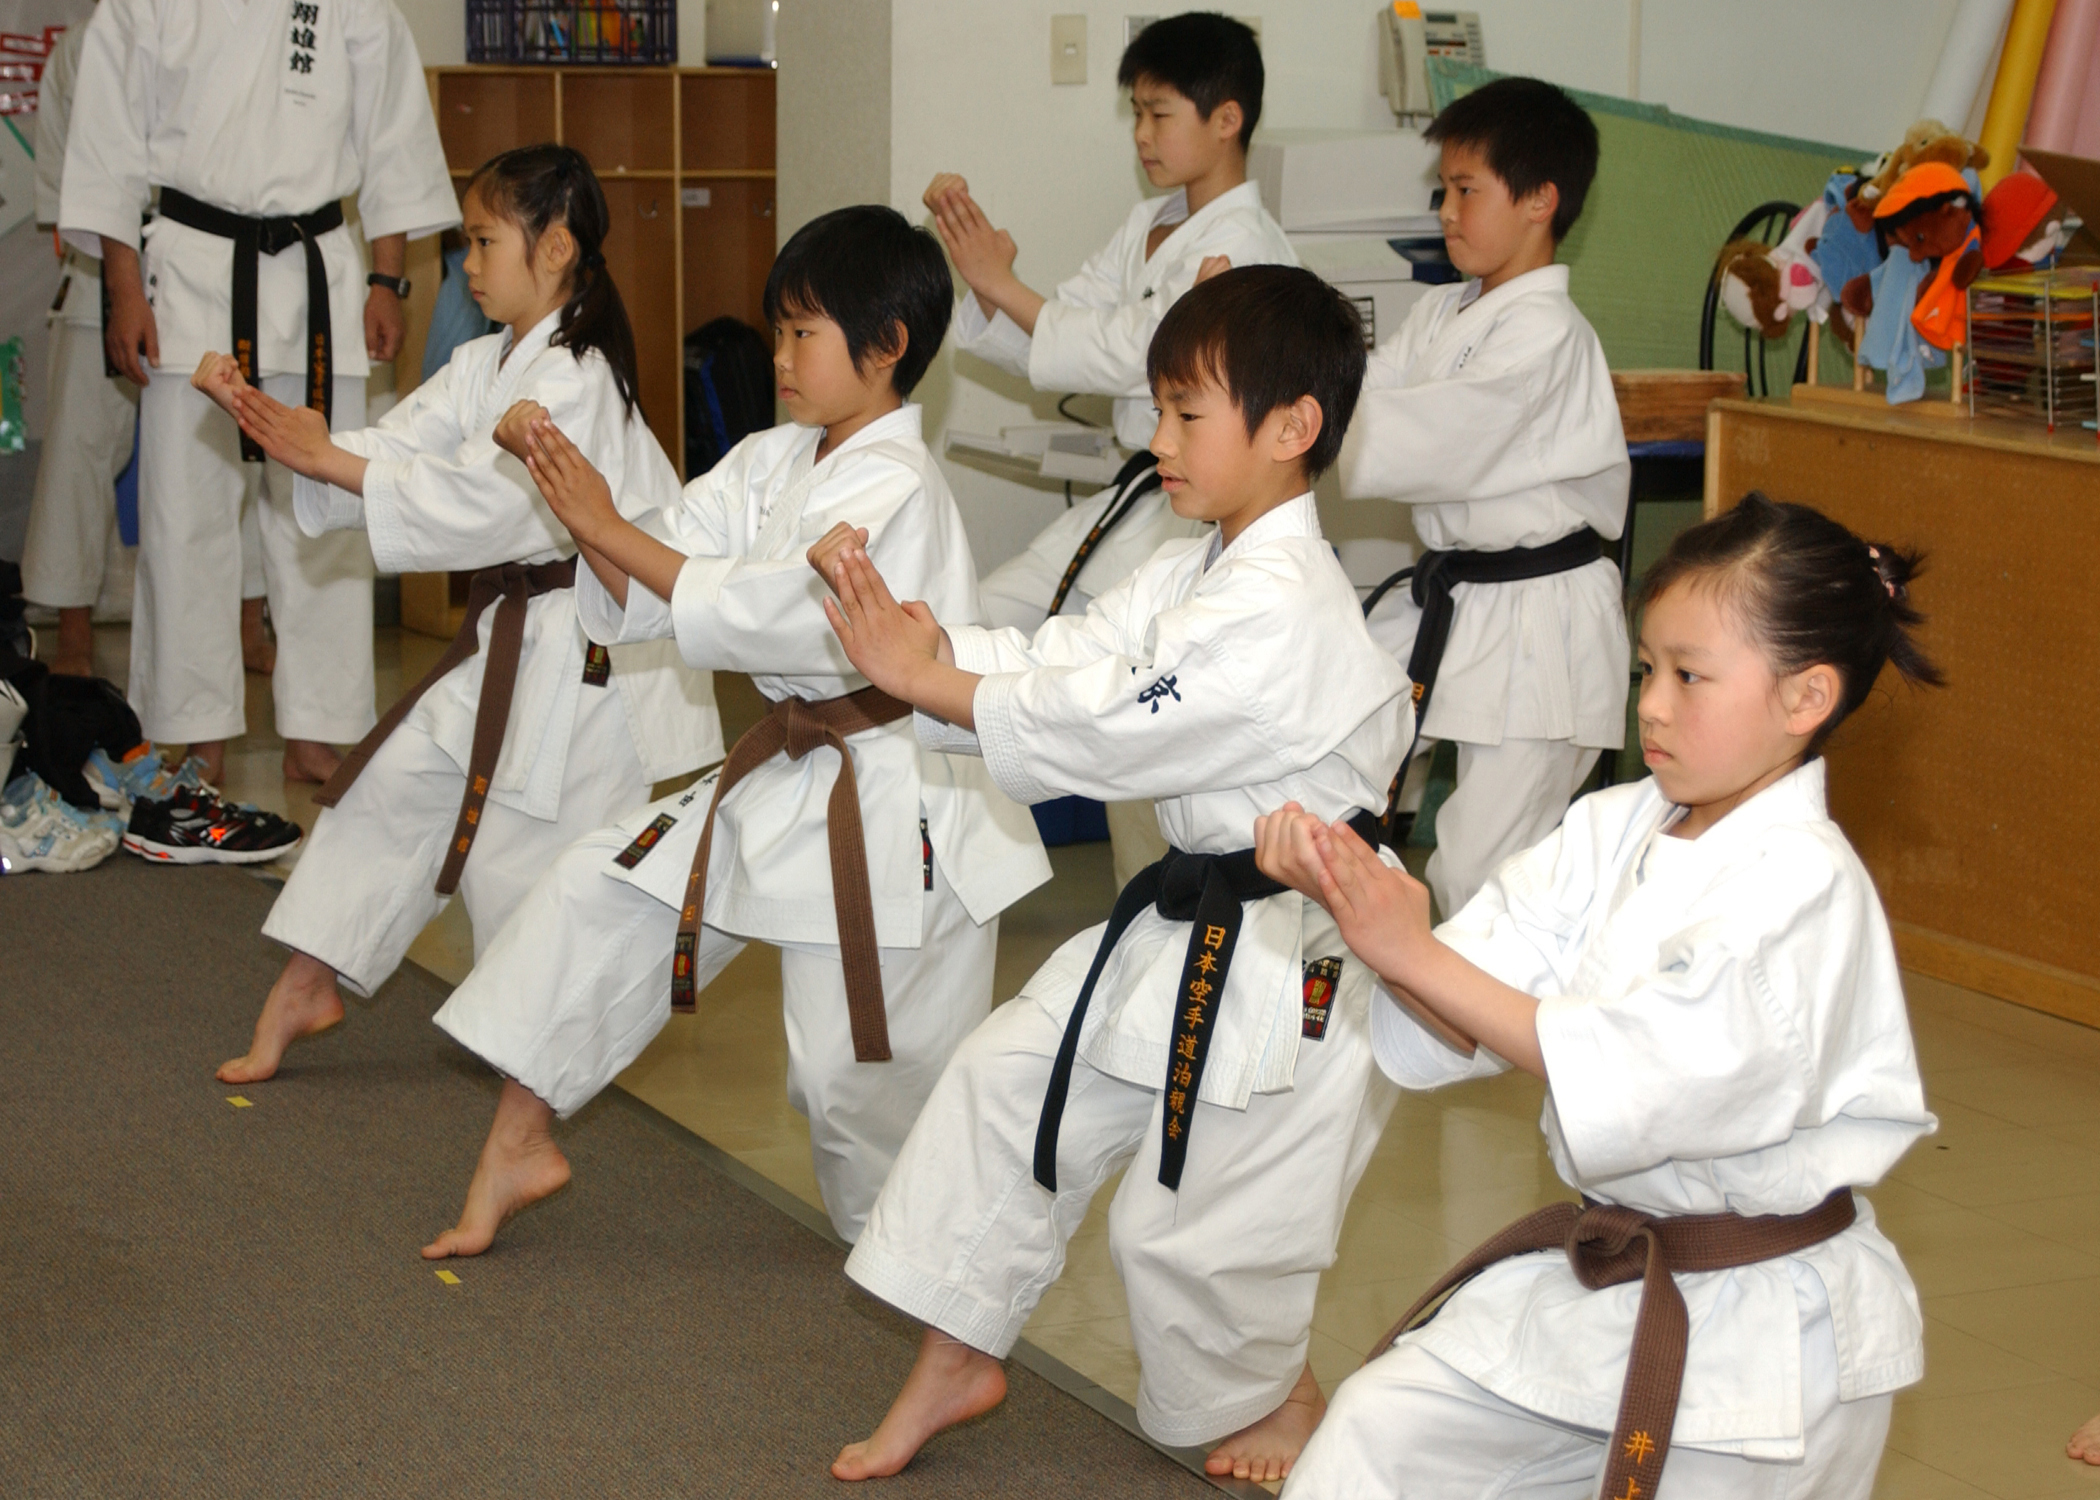  Karate  Kata  AllAboutLean com